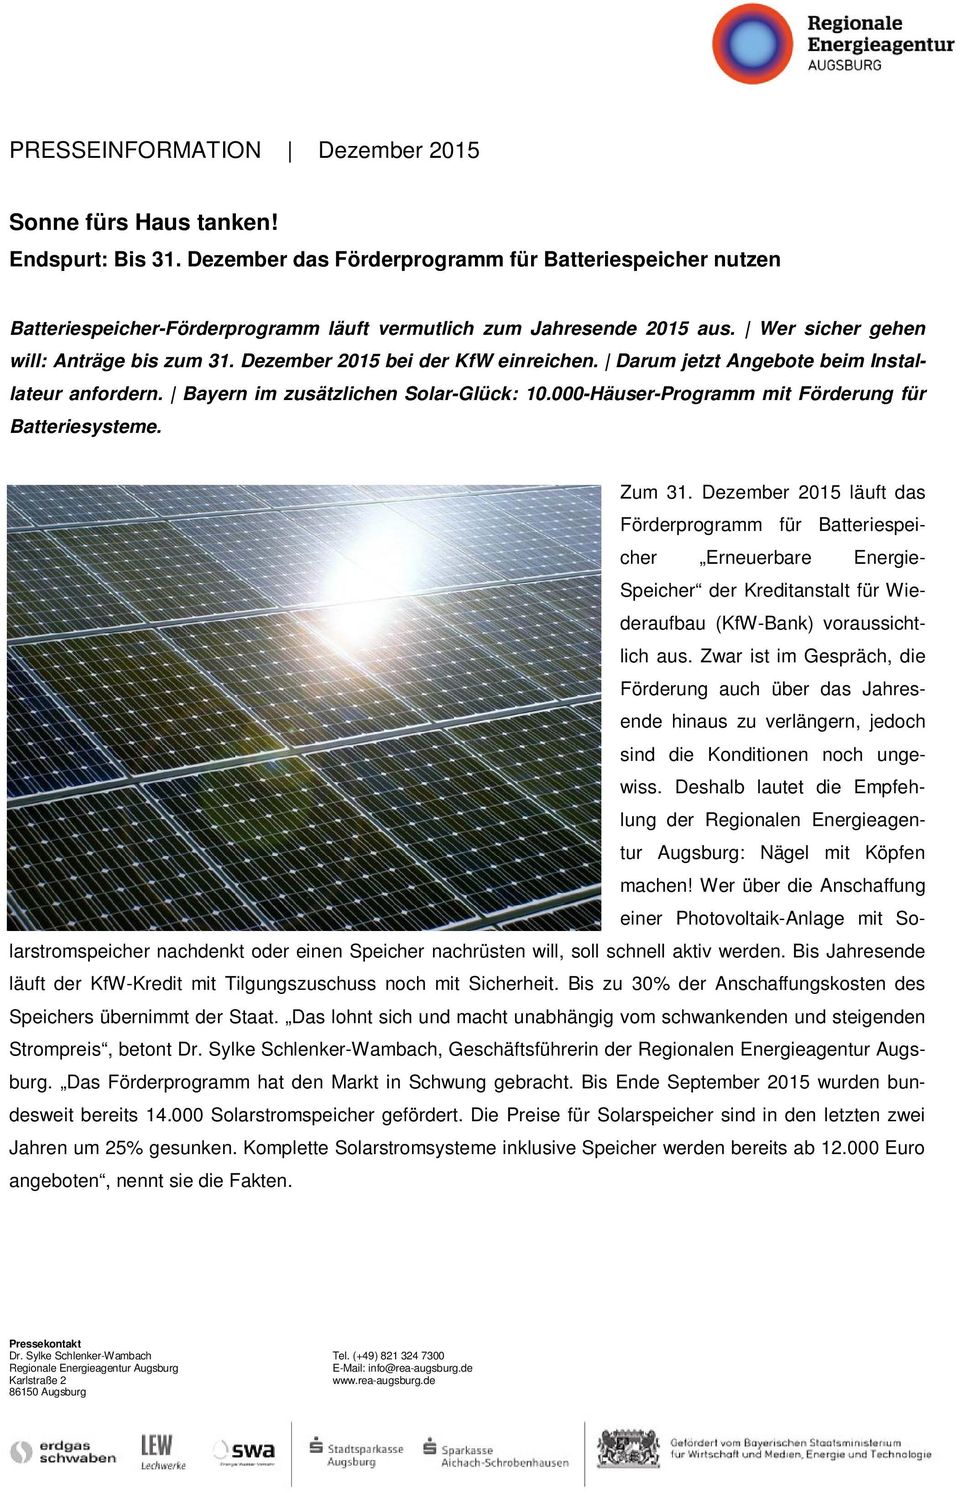 Dezember 2015 bei der KfW einreichen. Darum jetzt Angebote beim Installateur anfordern. Bayern im zusätzlichen Solar-Glück: 10.000-Häuser-Programm mit Förderung für Batteriesysteme. Zum 31.